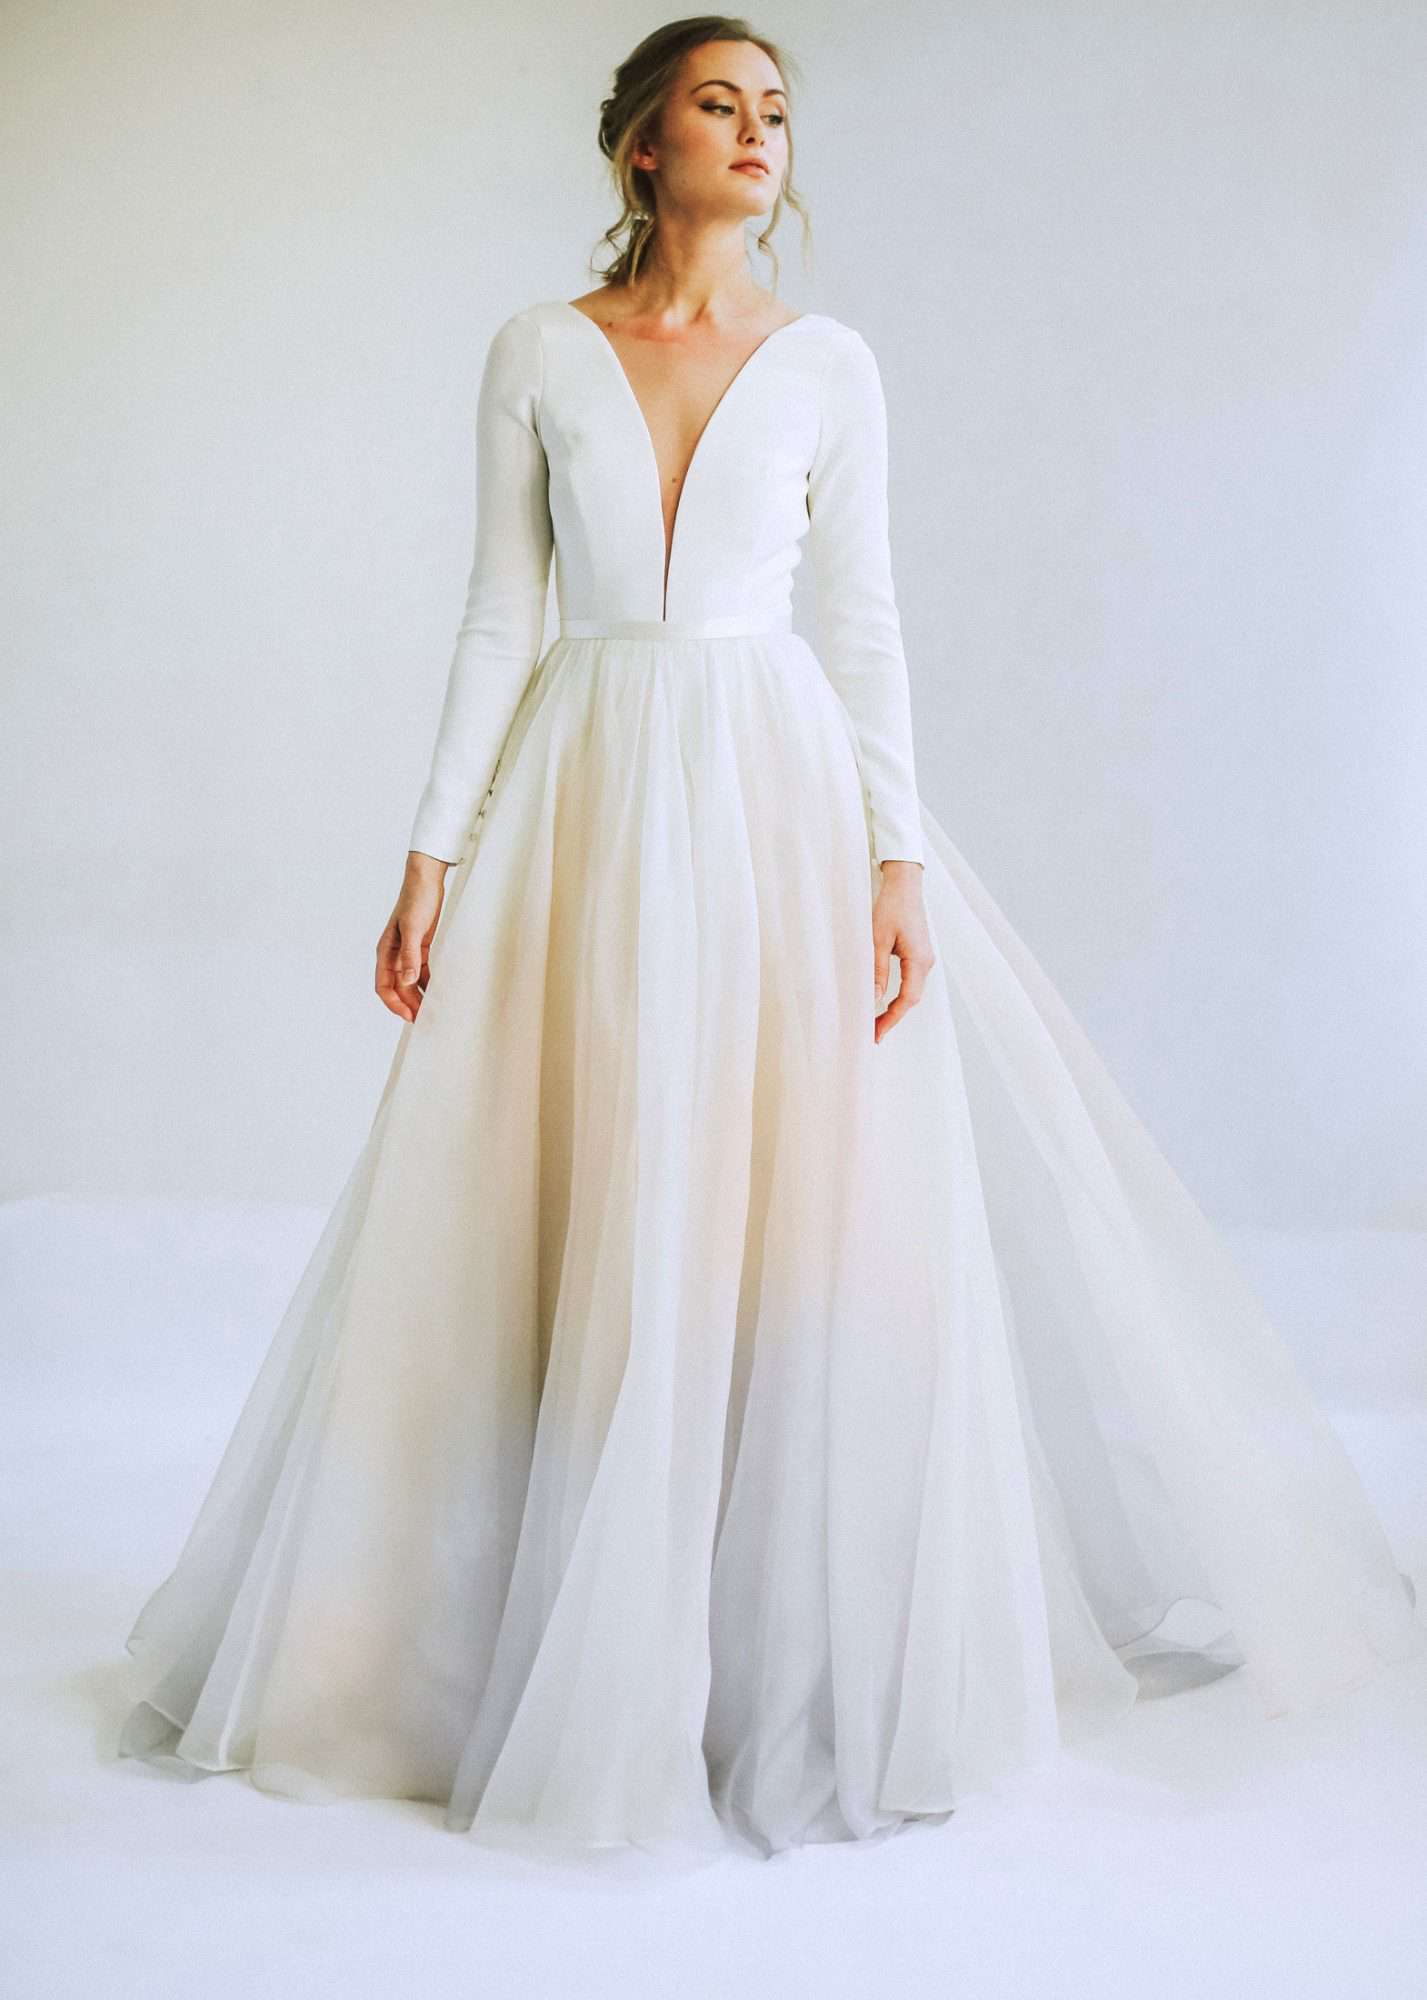 leanna marshall long sleeve deep slit bodice ball gown wedding dress spring 2020